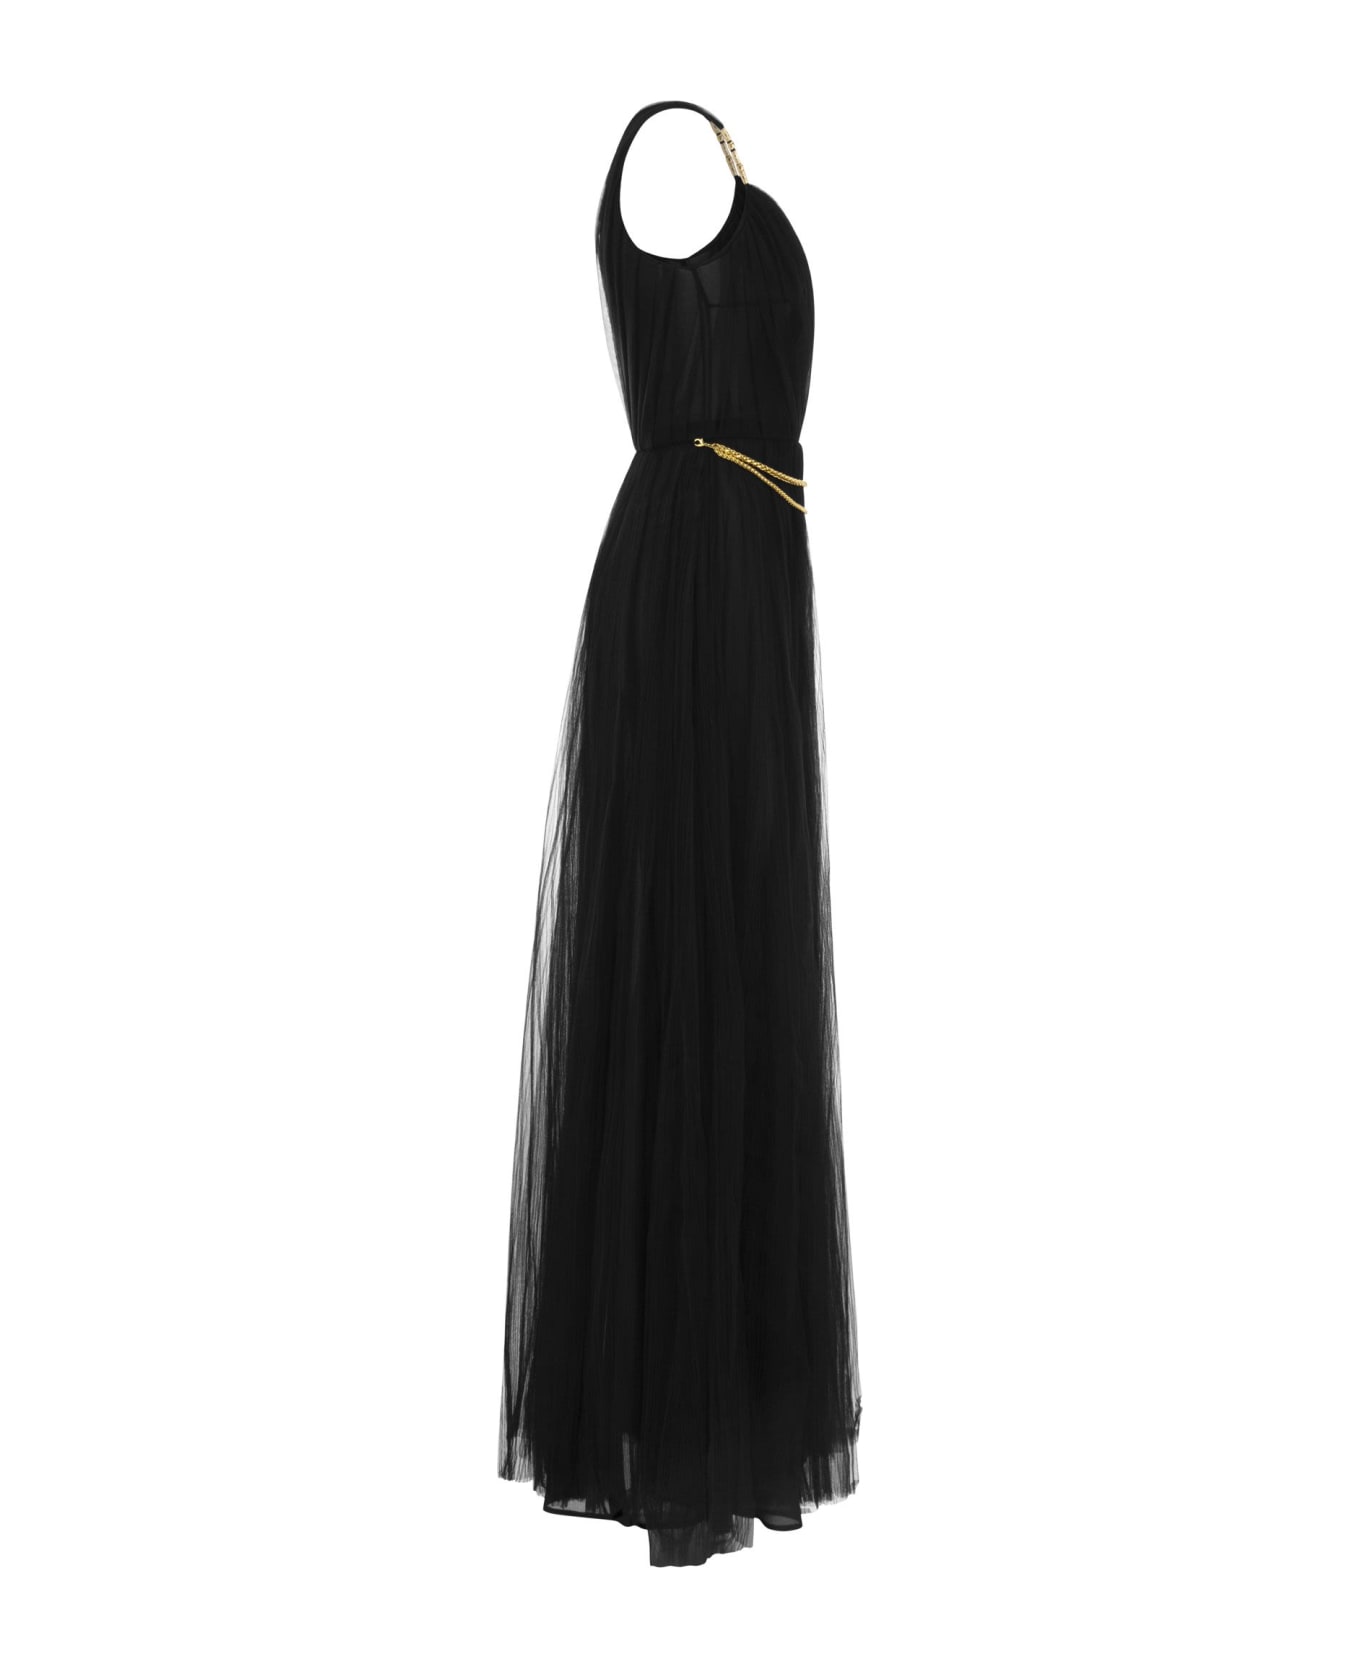 Elisabetta Franchi One-shoulder Tulle Red Carpet Dress - Black